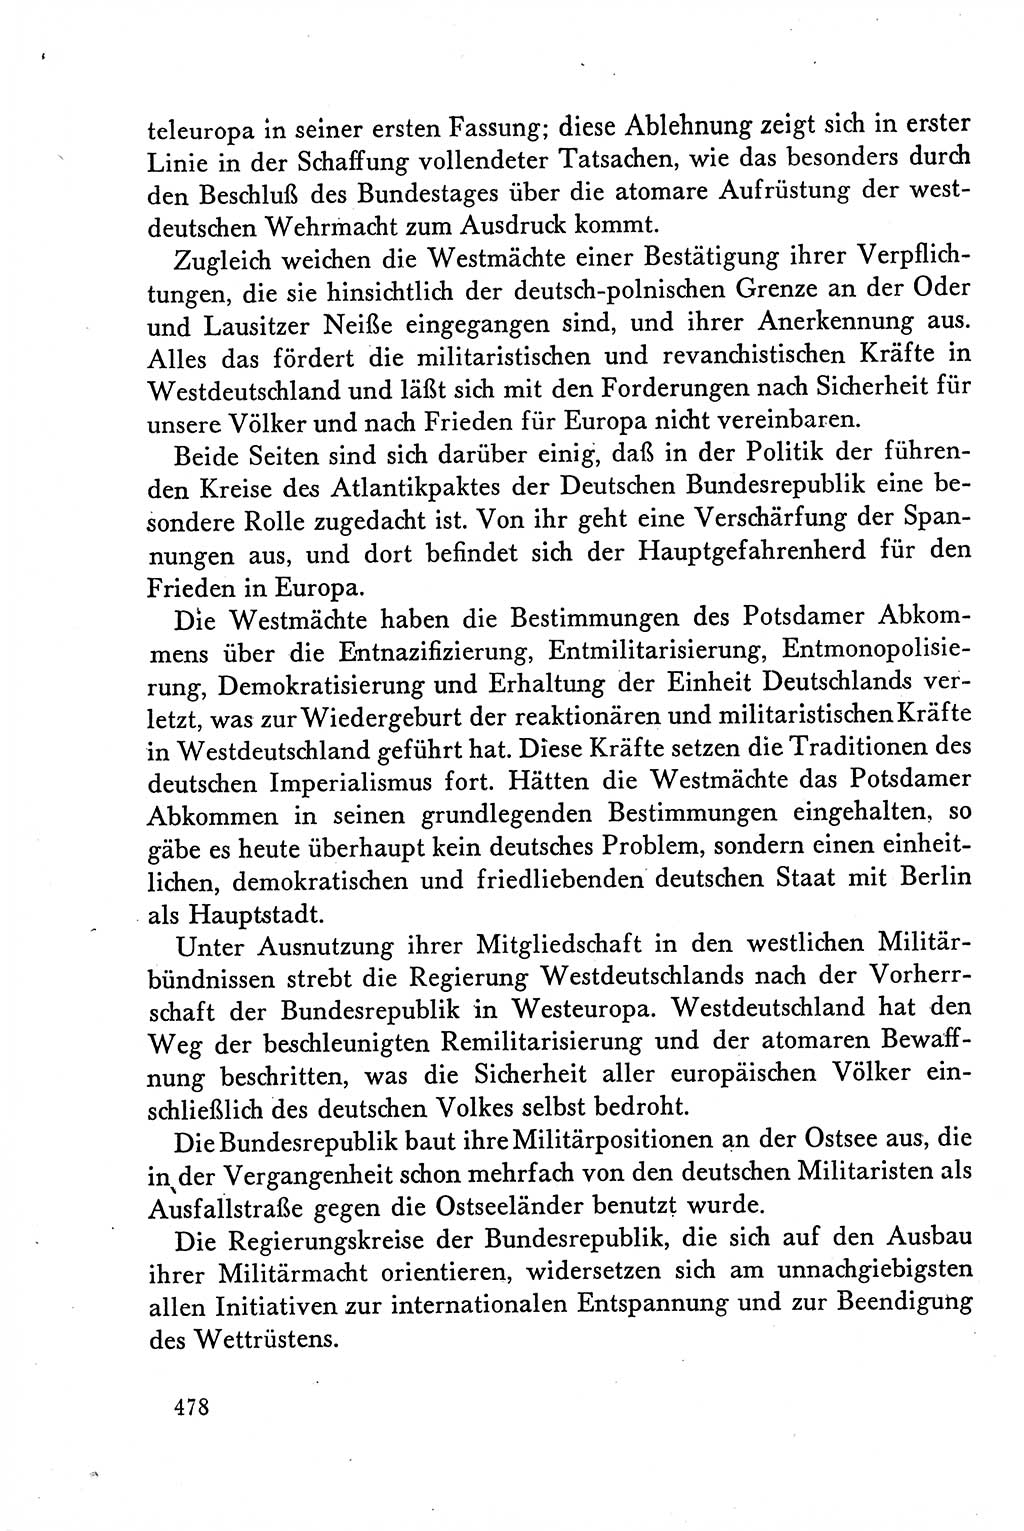 Dokumente der Sozialistischen Einheitspartei Deutschlands (SED) [Deutsche Demokratische Republik (DDR)] 1958-1959, Seite 478 (Dok. SED DDR 1958-1959, S. 478)